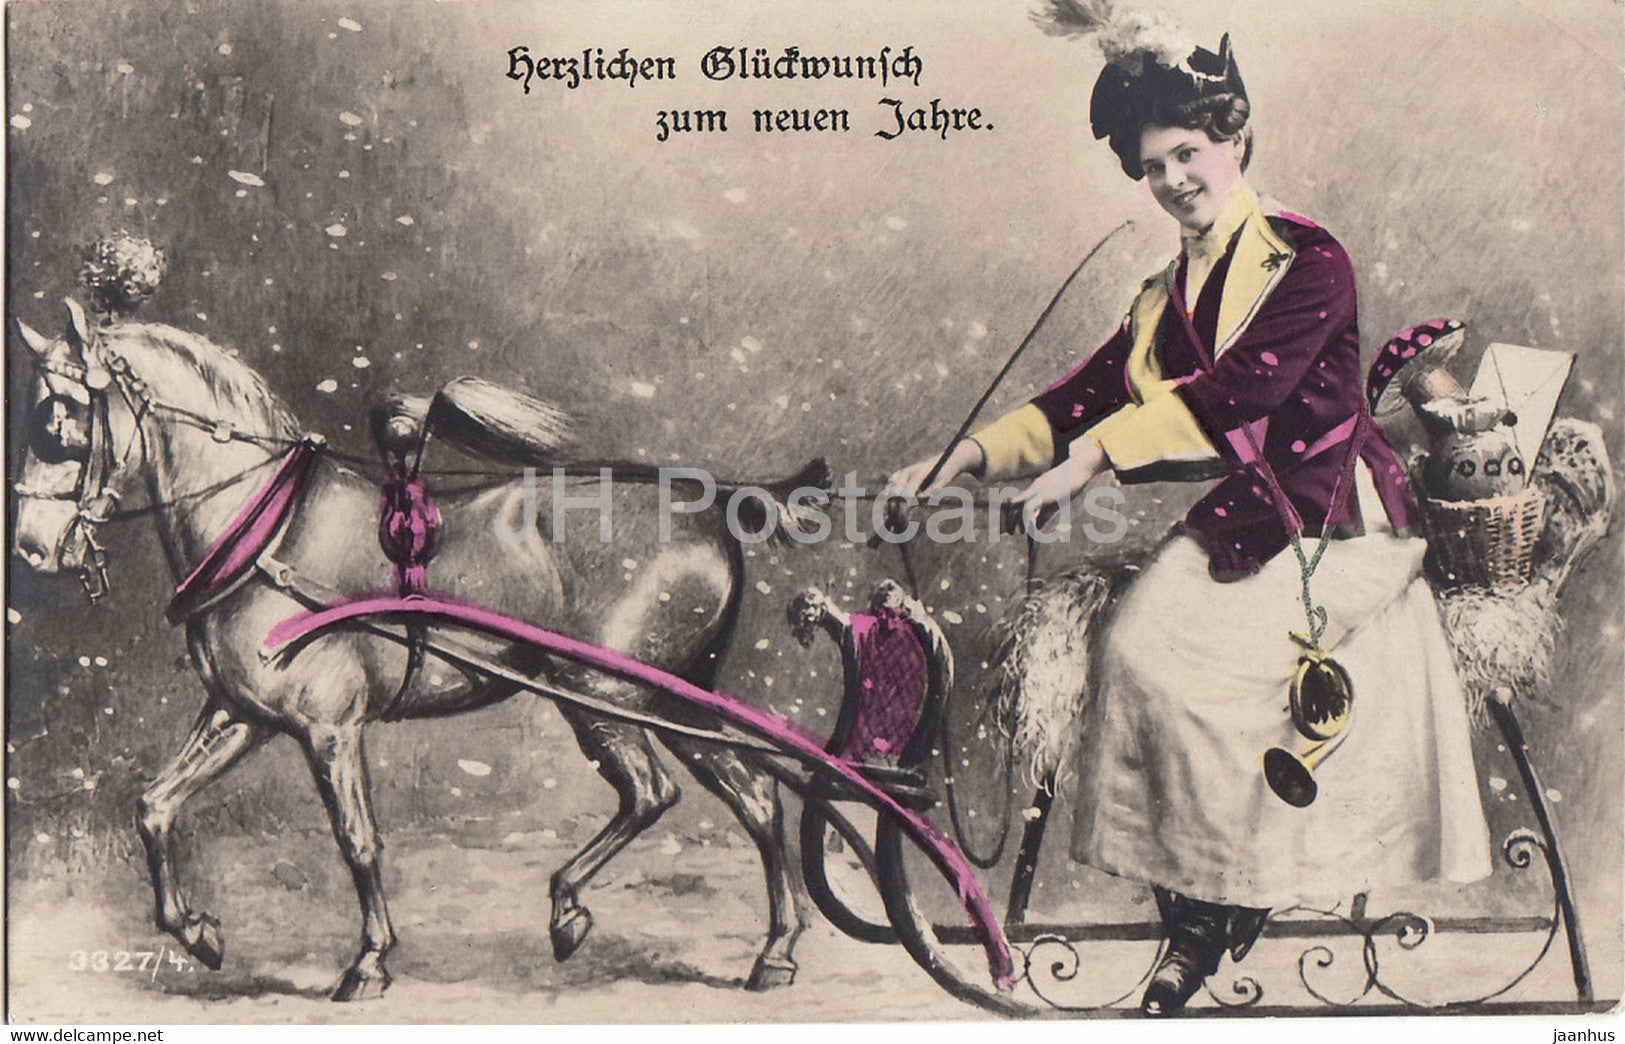 New Year Greeting Card - Herzlichen Gluckwunsch zum Neuen Jahre - horse sledge - old postcard - 1907 - Germany - used - JH Postcards